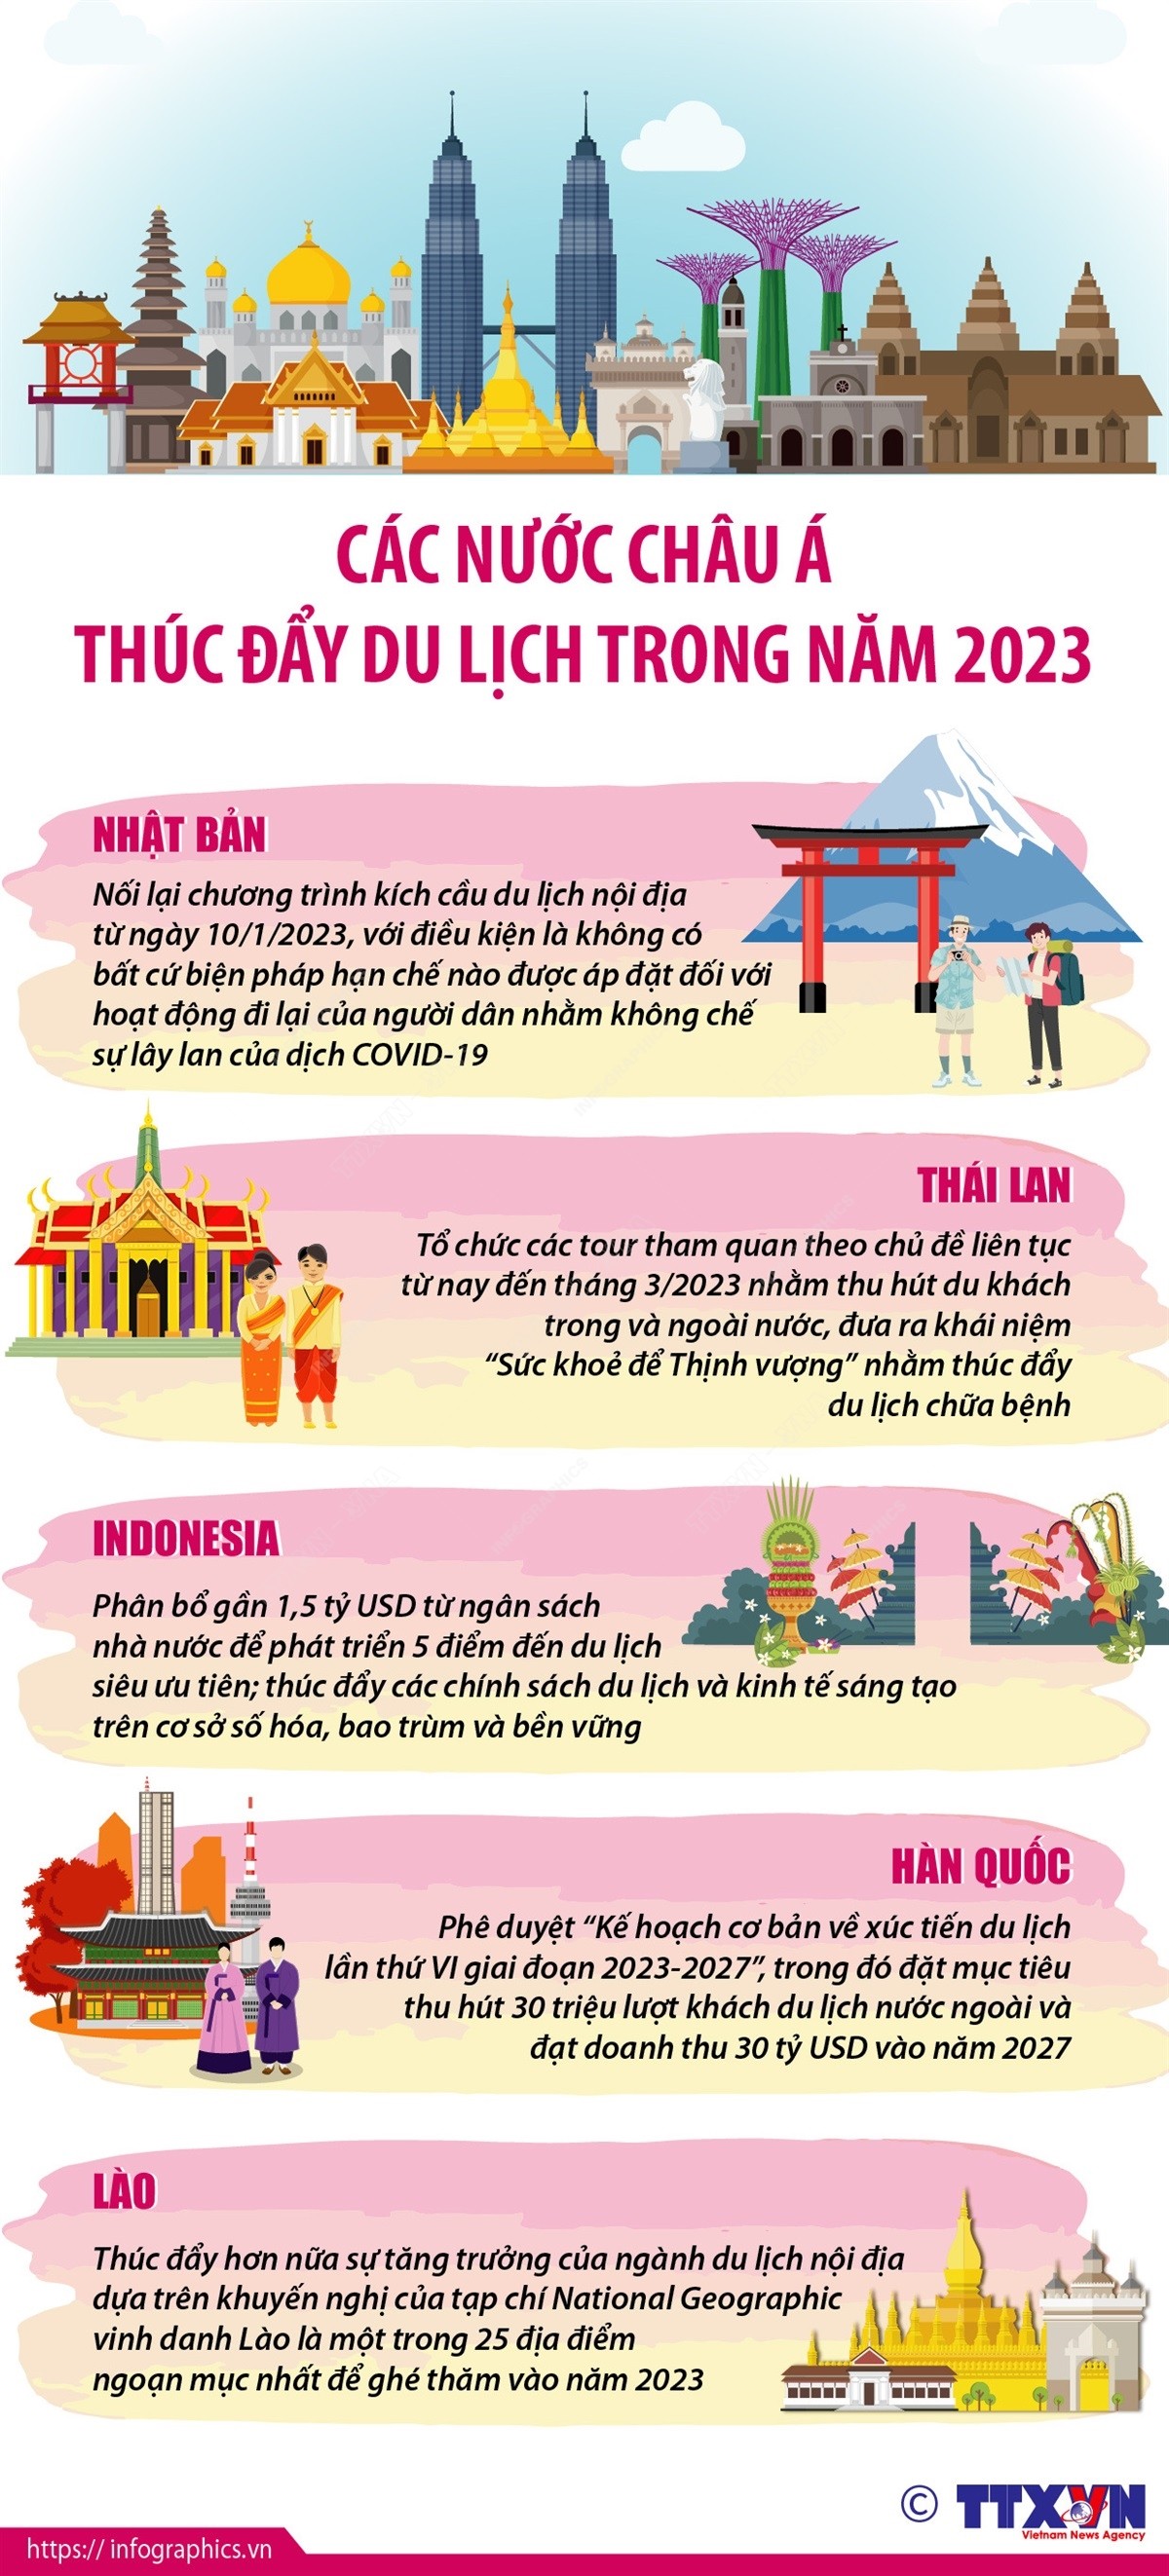 Các nước châu Á thúc đẩy du lịch trong năm 2023